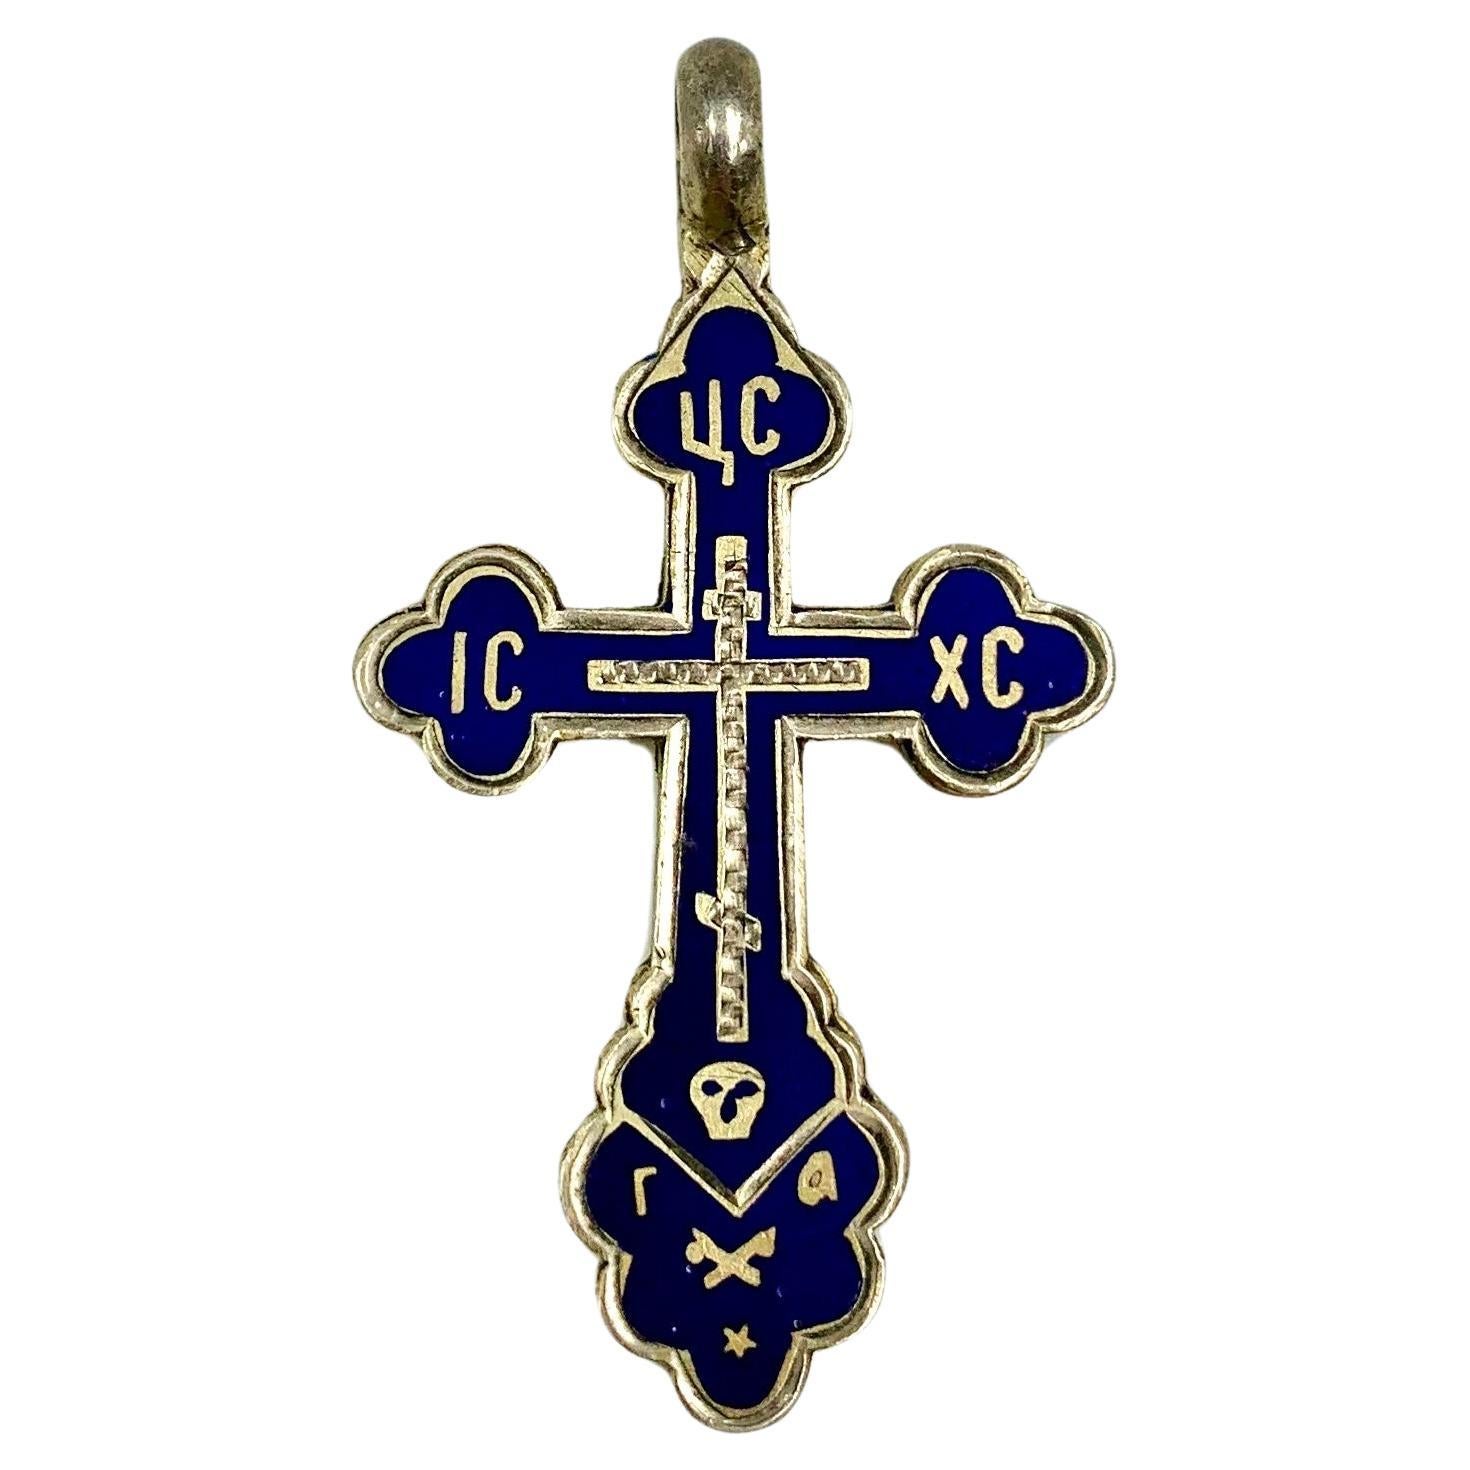 Feines antikes russisches orthodoxes kobaltfarbenes Silberkreuz aus Emaille und Silber, 19. Jahrhundert